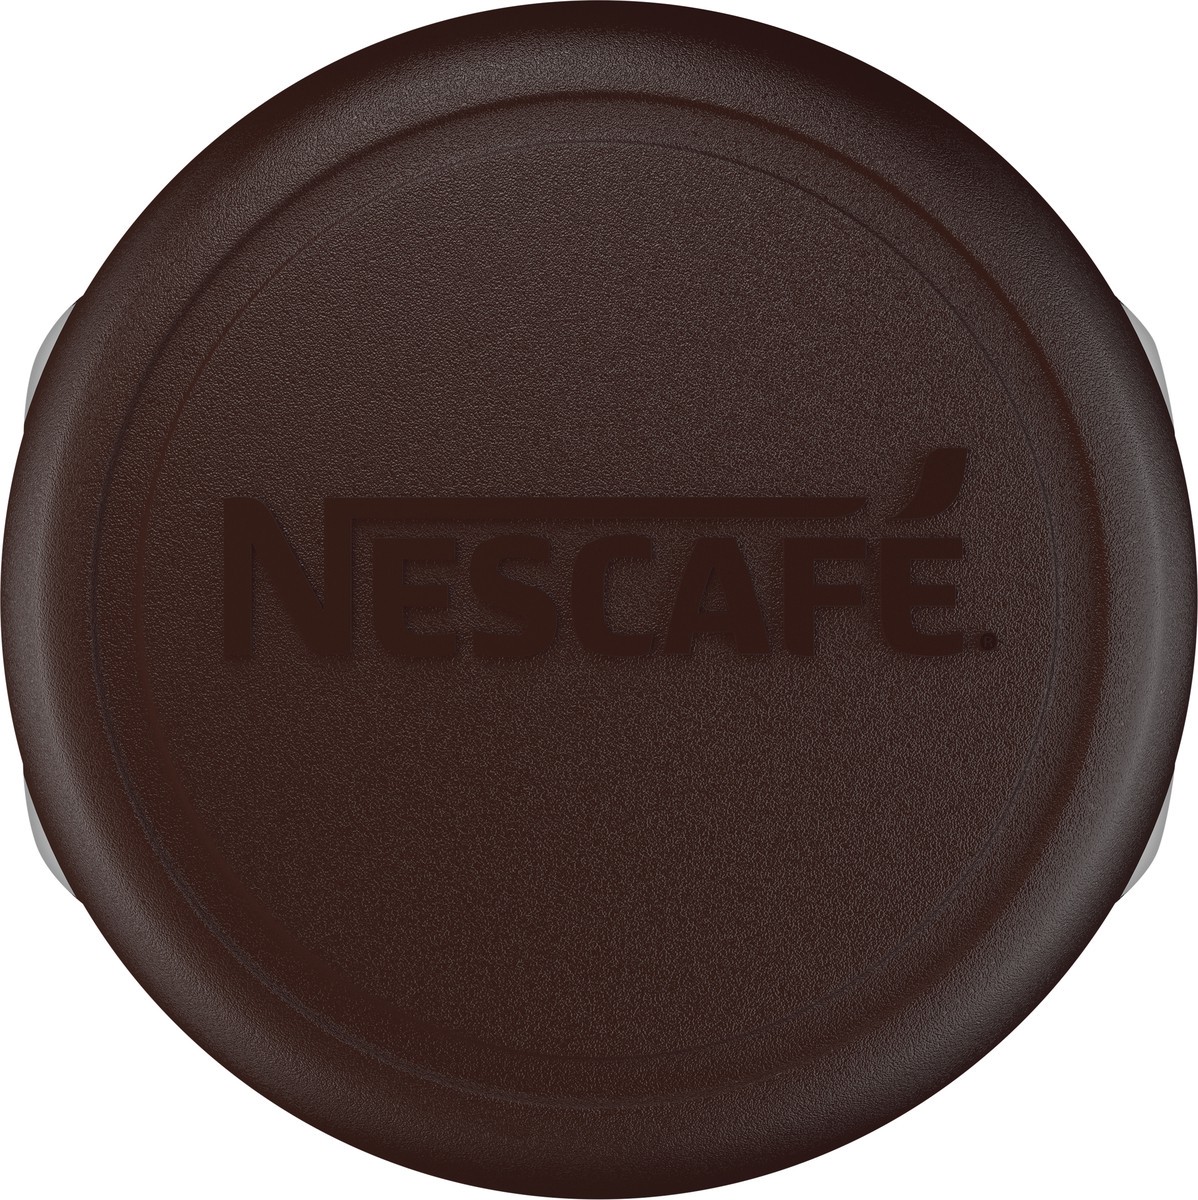 slide 9 of 9, Nescafe Clasico Dark Roast Coffee - 7oz, 7 oz